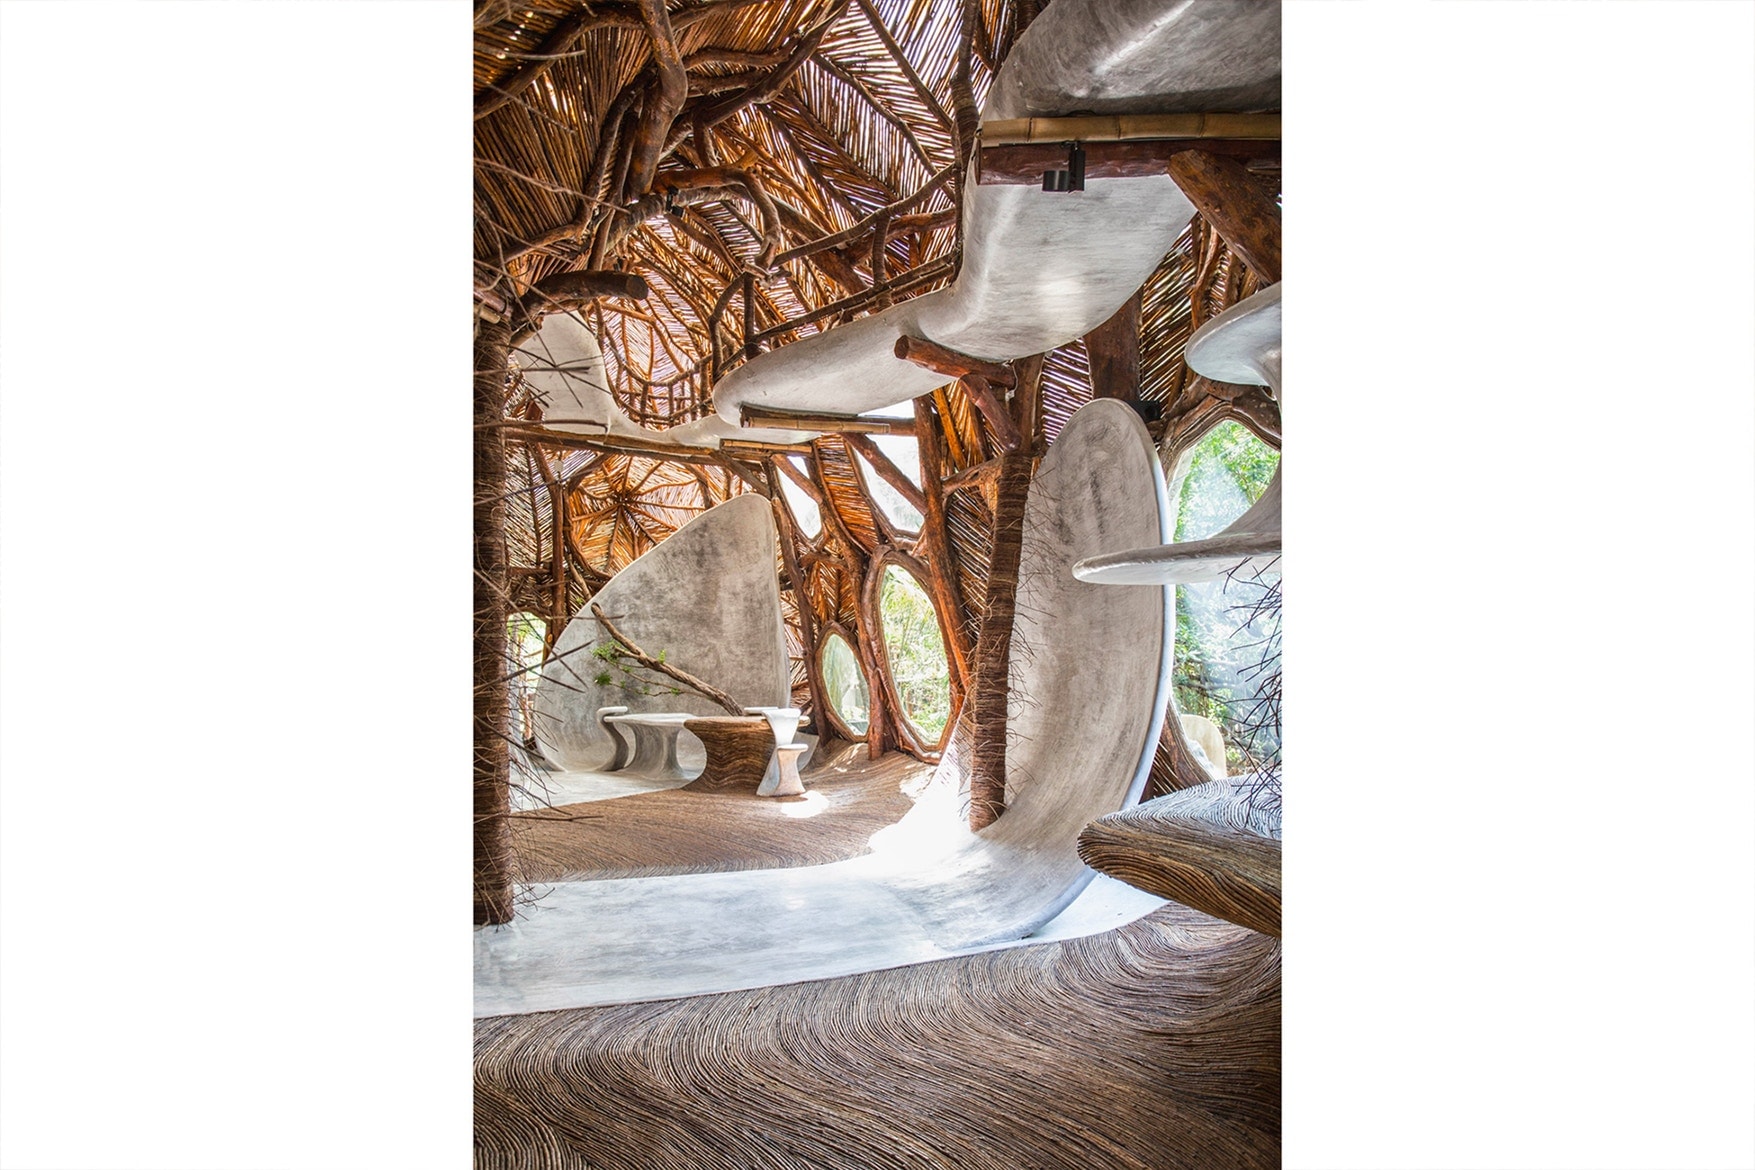 ジブリの世界を彷彿とさせる自然派アートギャラリー IK Lab が完成 展示作品より目立ってしまいそうなツリーハウス風のデザイン空間をチェック メキシコ トゥルム アートギャラリー IK Lab ツリーハウス 現地の木材 コンクリート リラックスムード HYPEBEAST ハイプビースト